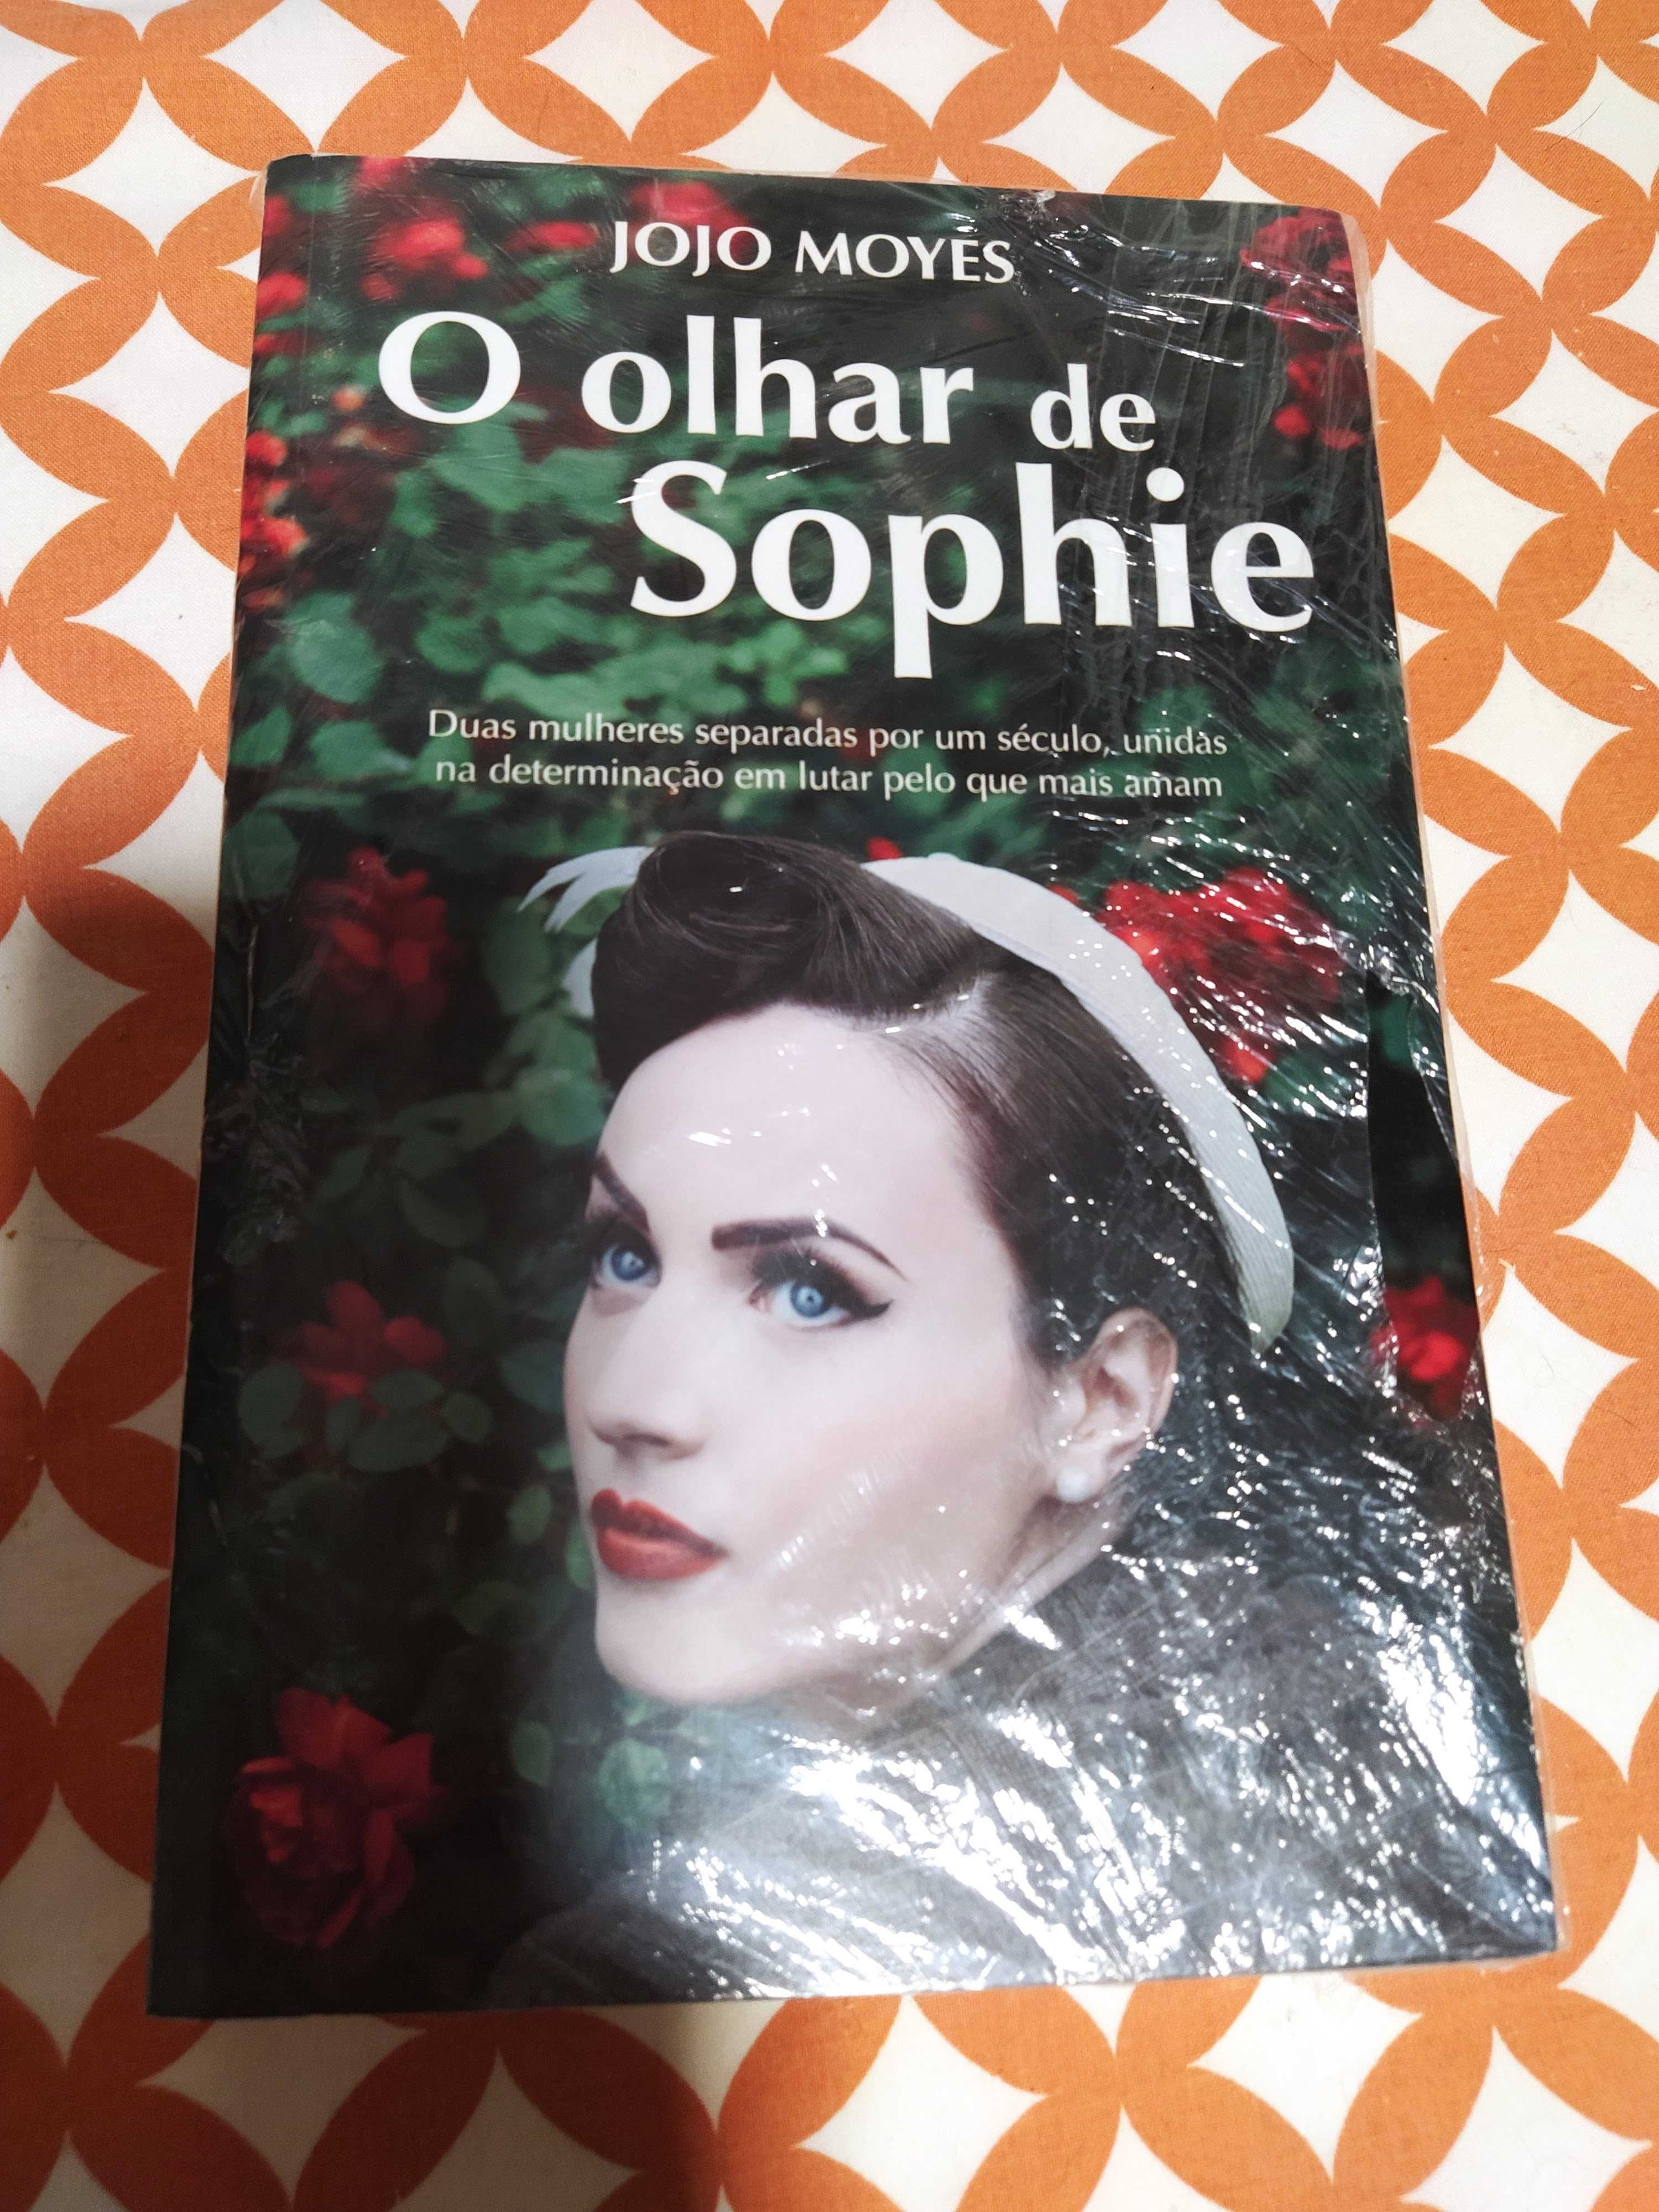 Vendo livro "O olhar de Sophie"